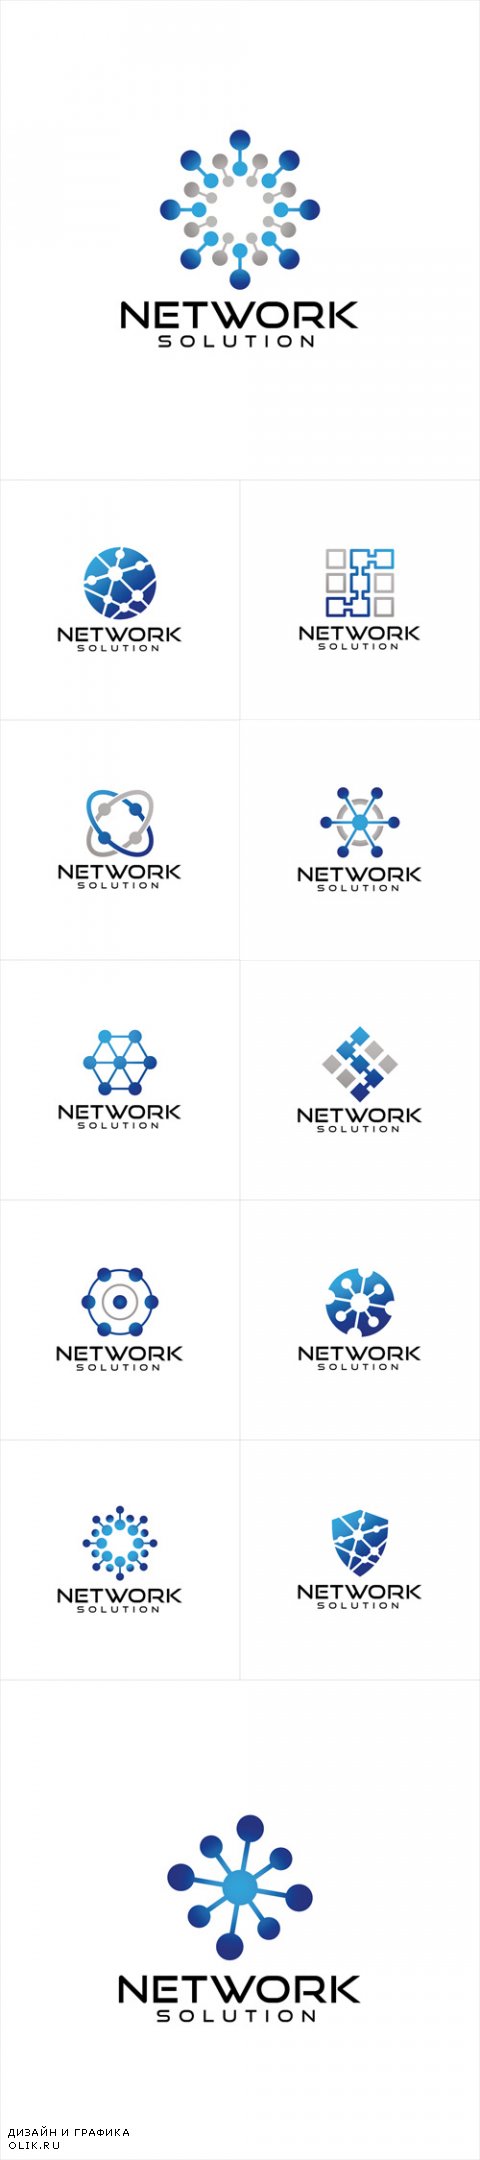 Vector Network Logo Design